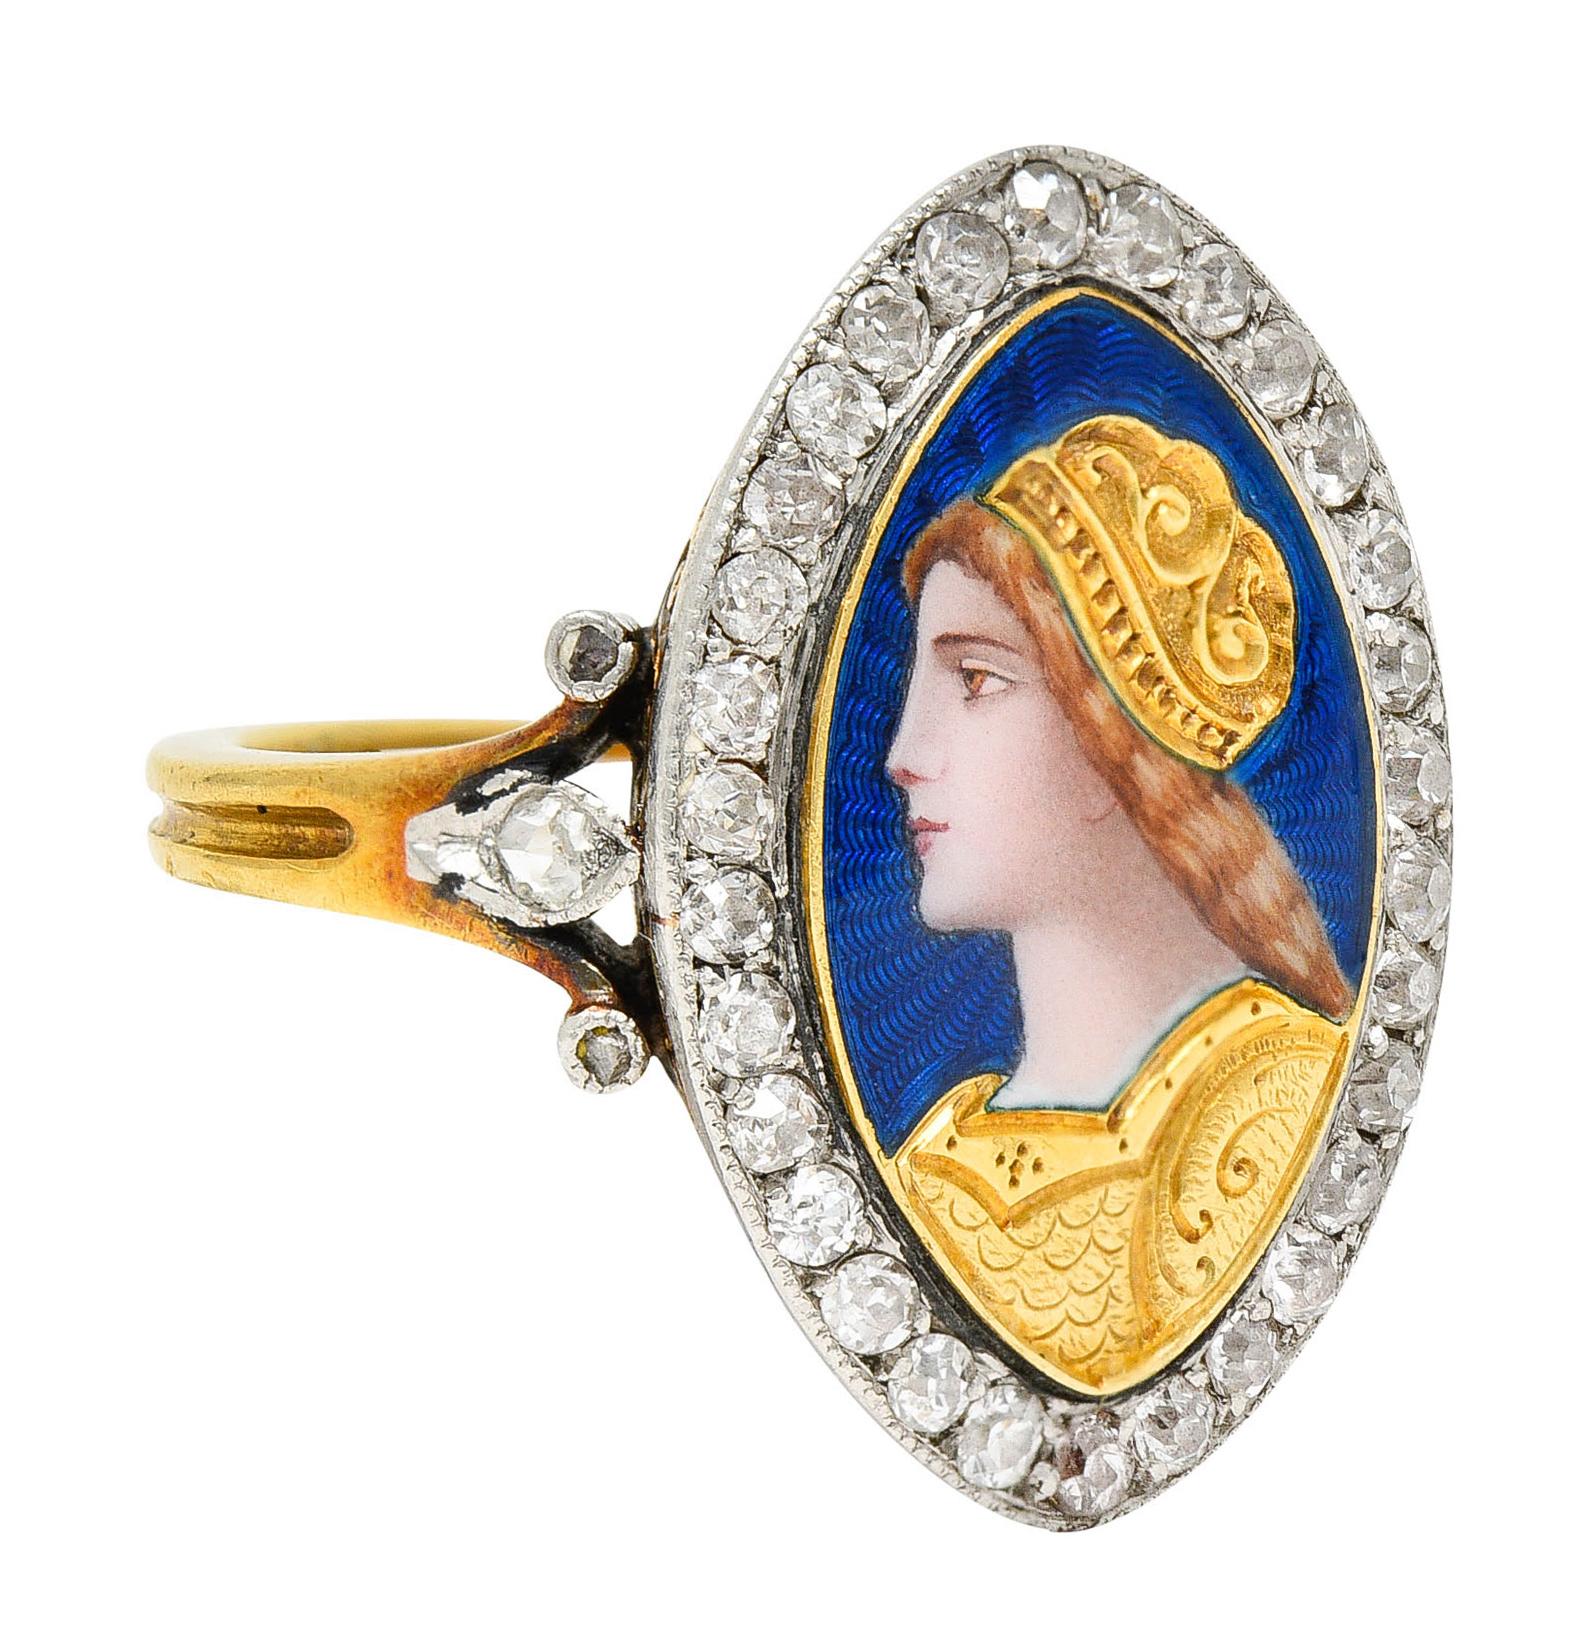 Der Ring in Form einer Navette zeigt ein raffiniertes Emailporträt einer Frau aus der Renaissance

Mit tief eingravierten goldenen Gewändern und einem strahlenden guillochierten Email-Hintergrund - leuchtendes Ultramarinblau

Umgeben von alten,